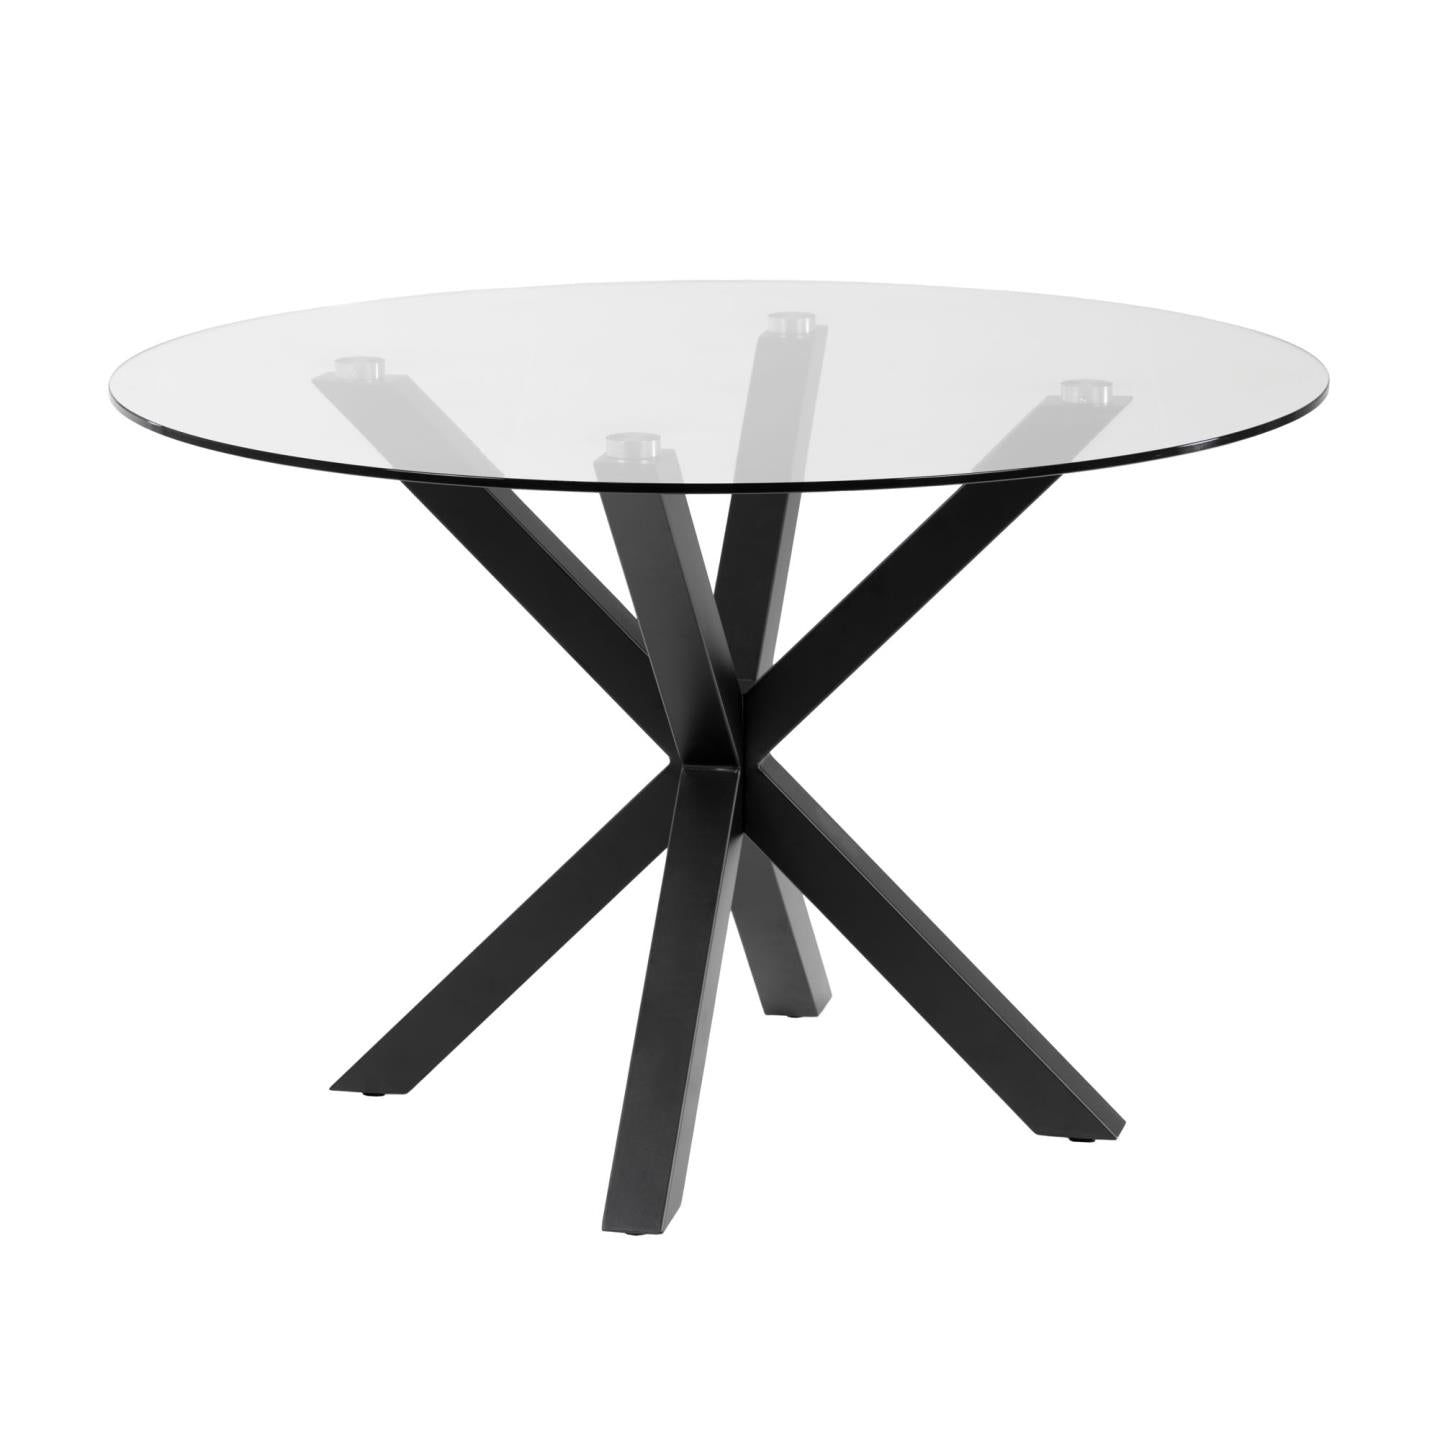 Teljes Argo kerek üvegasztal acél lábakkal, fekete színű Ø 119 cm